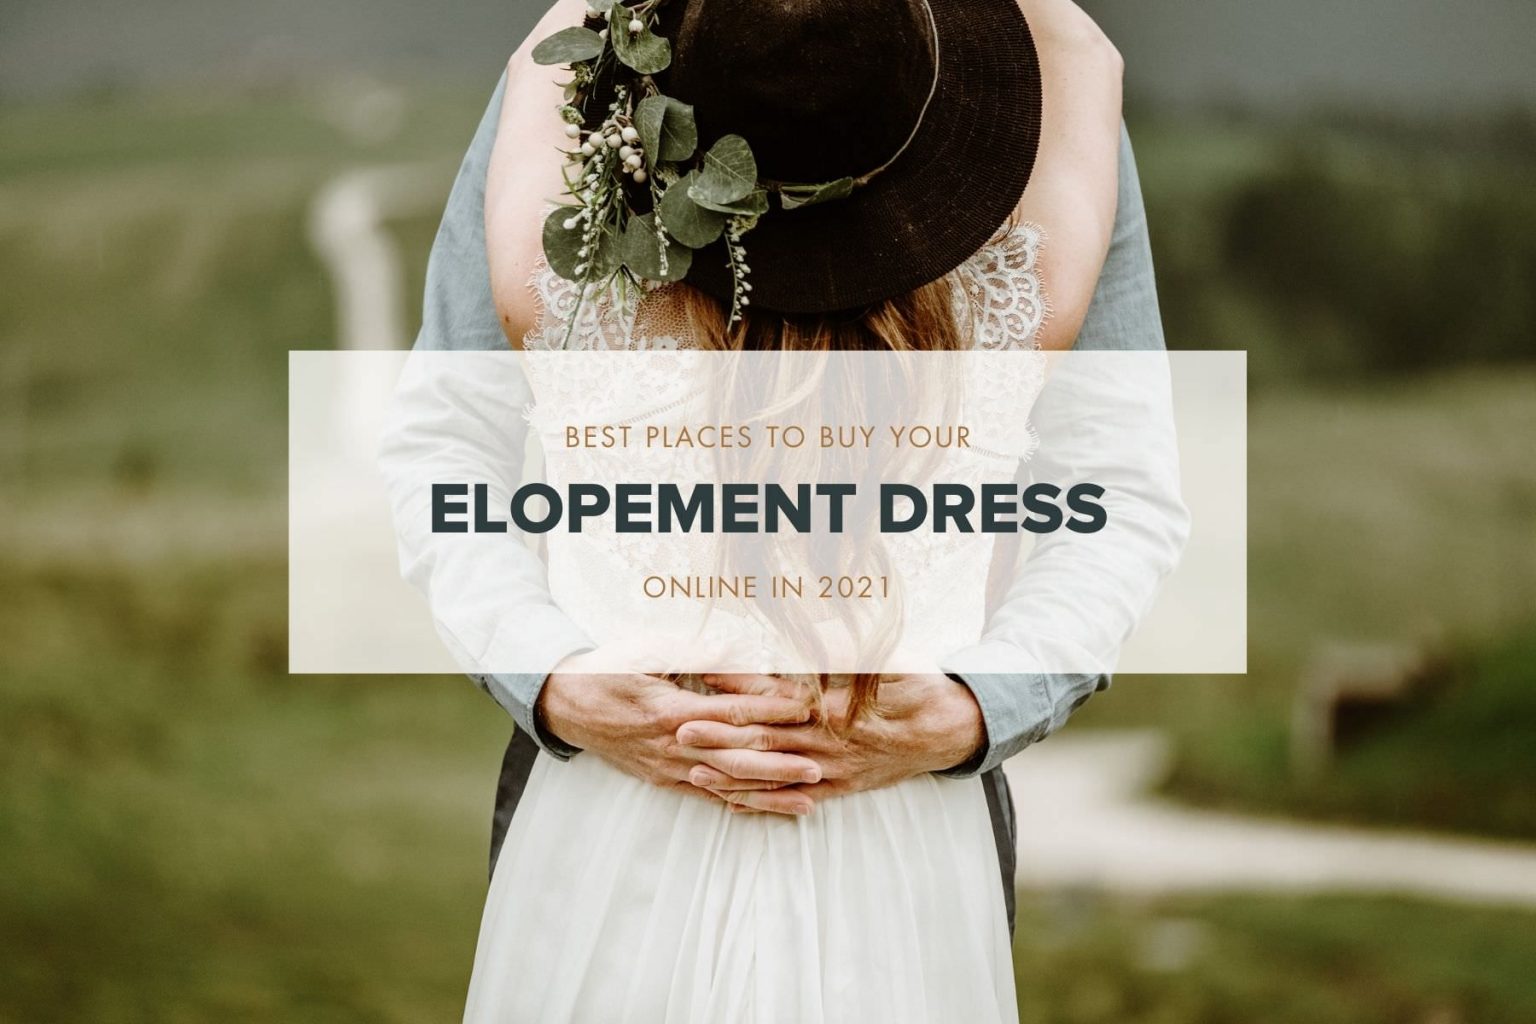 Where To Buy An Elopement Dress Online 1536x1024 